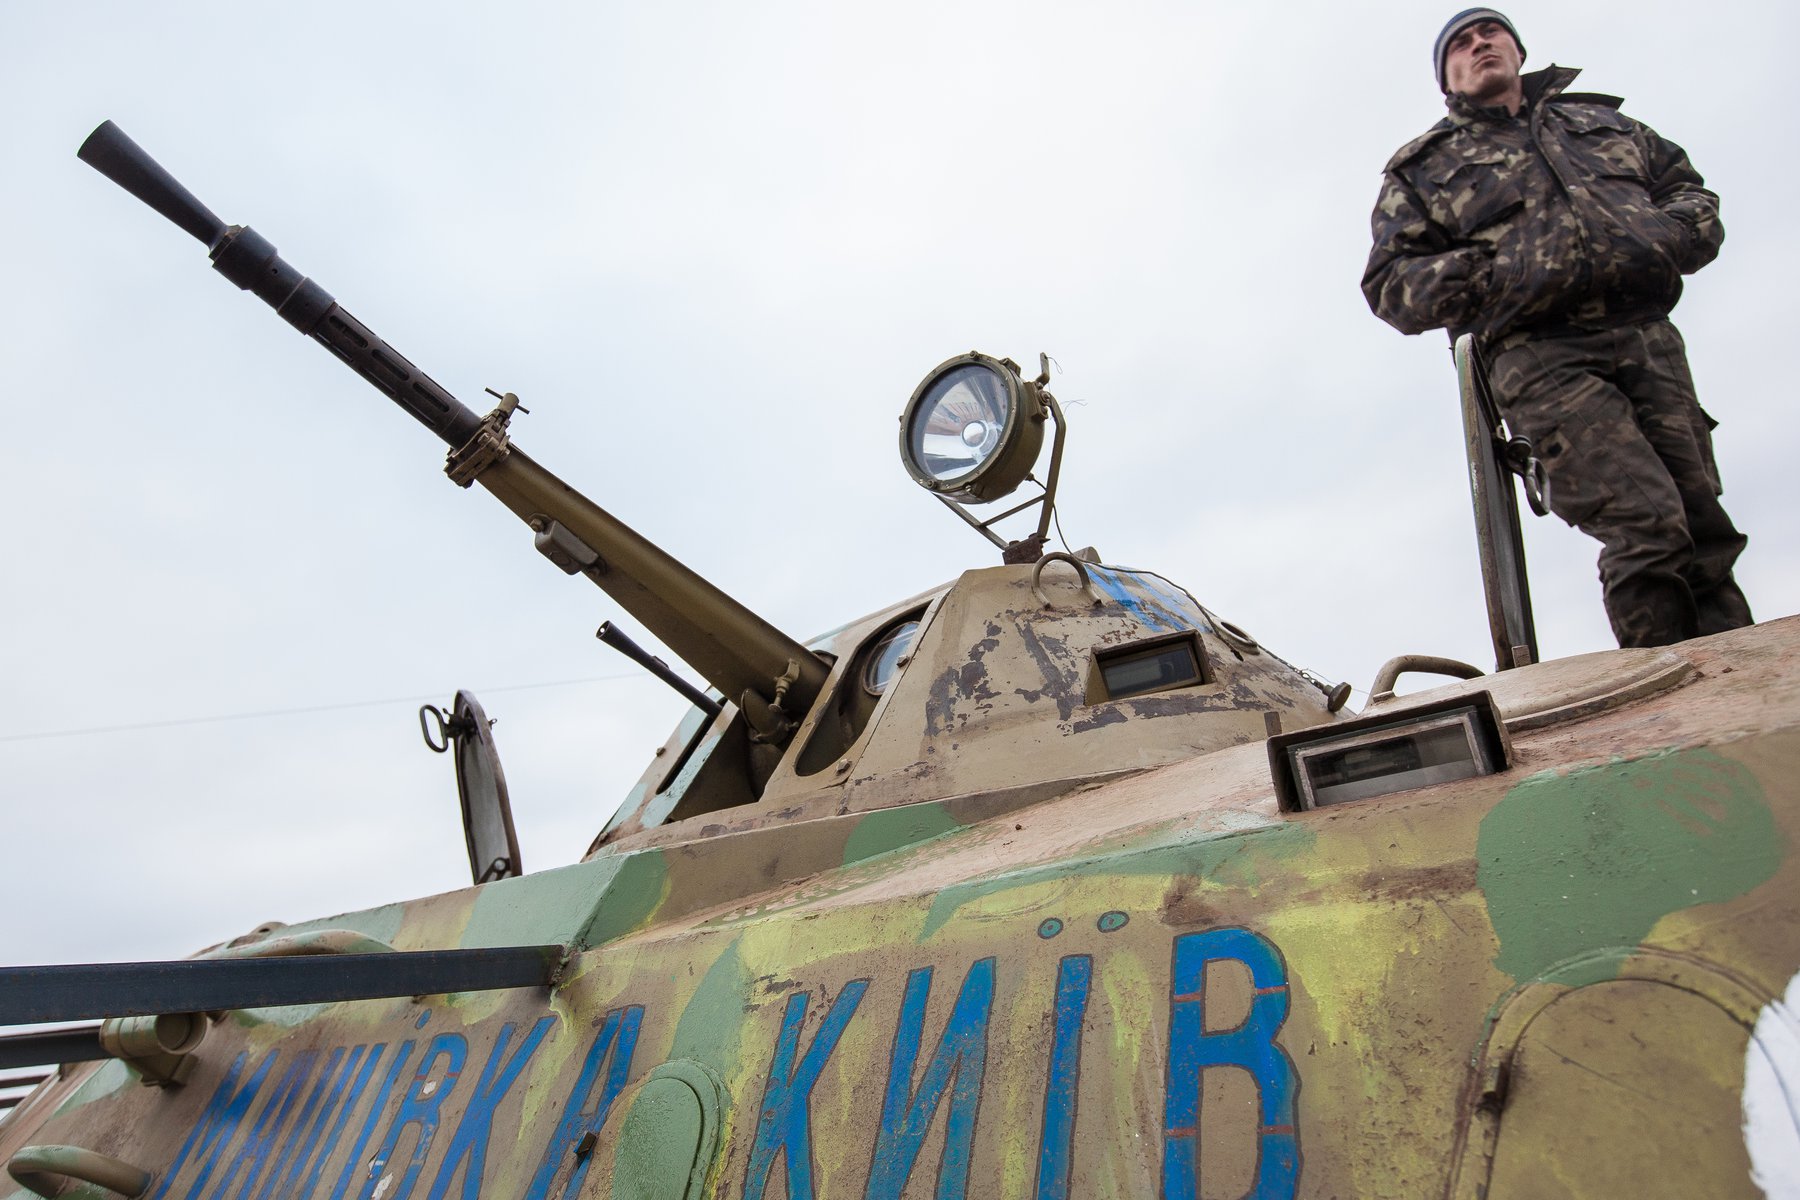 Νέος εξοπλισμός για την Ουκρανία από τη Δύση – Οι πύραυλοι της δημιουργούν σοβαρά προβλήματα στον ρωσικό στρατό